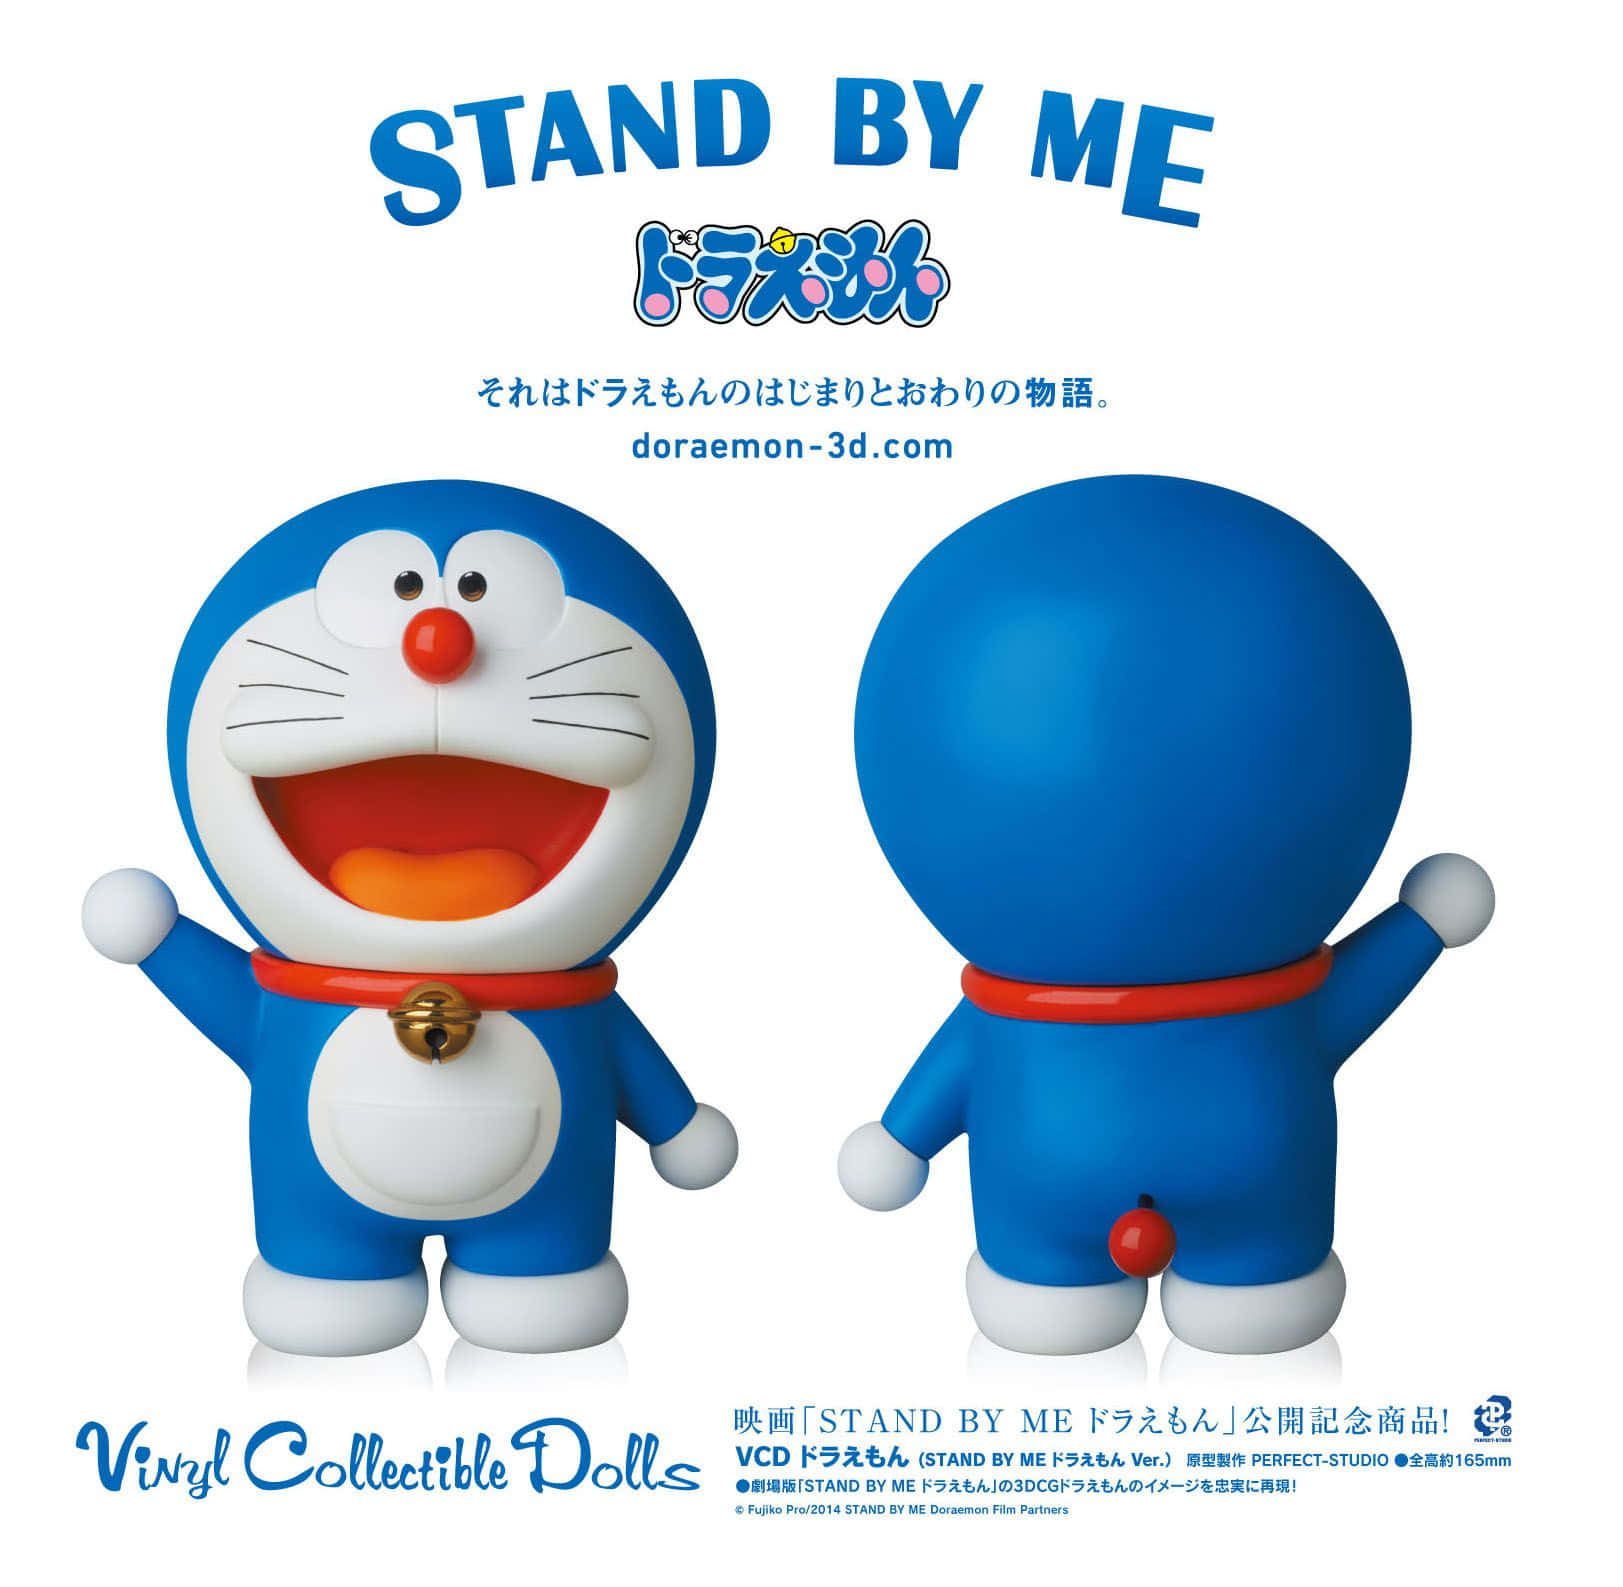 Hintergrundbildmit Doraemon